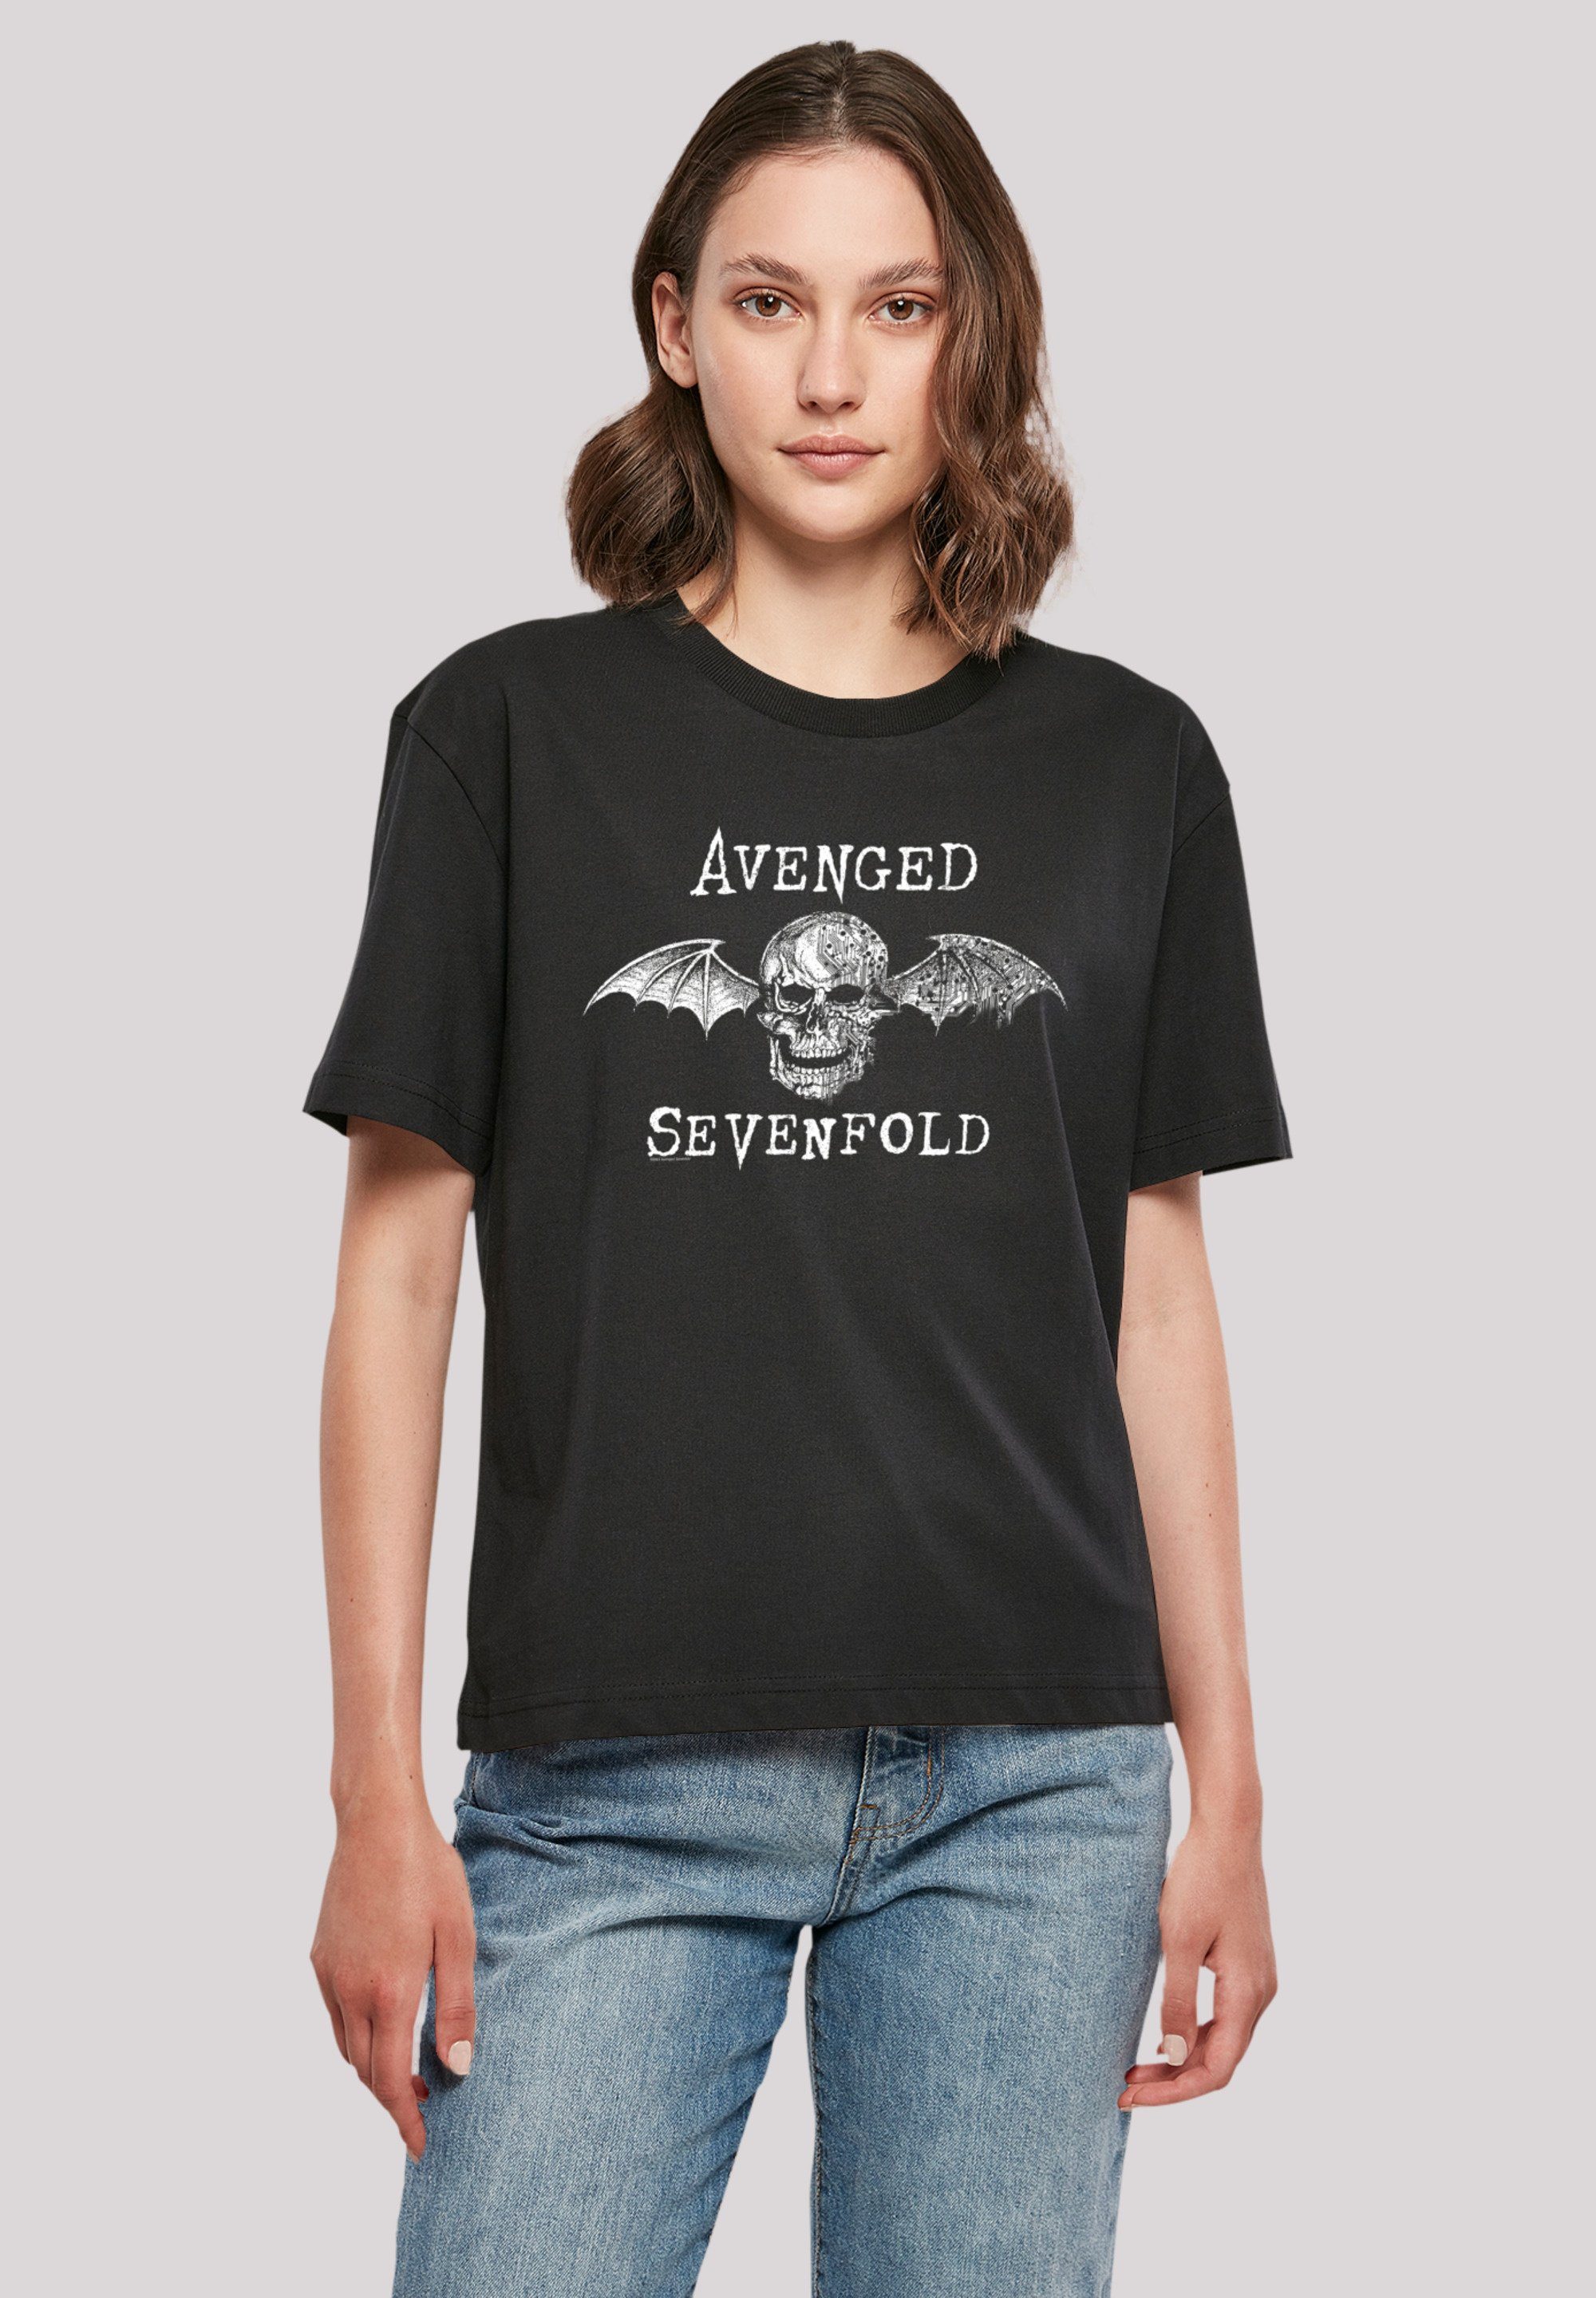 F4NT4STIC T-Shirt Avenged Sevenfold Bat Band, Rock-Musik, Offiziell Avenged Cyborg Rock Qualität, Metal lizenziertes Sevenfold T-Shirt Premium Band